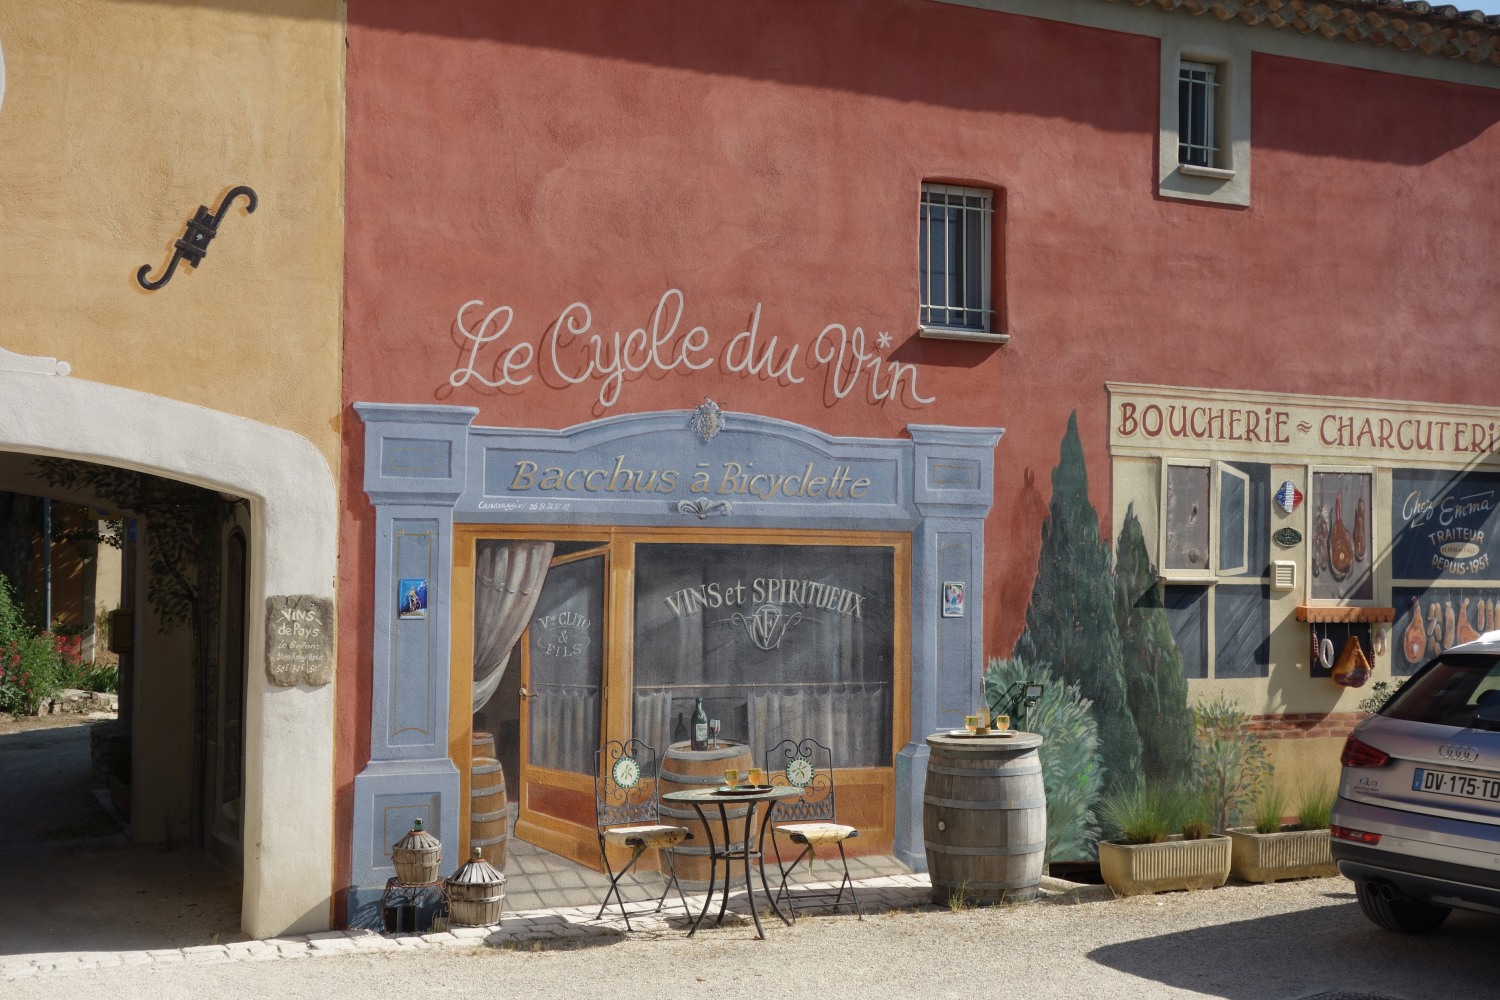 Een denkbeeldig café met de titel Le Cycle du Vin, te zien vanaf een fietspad in Luberon.